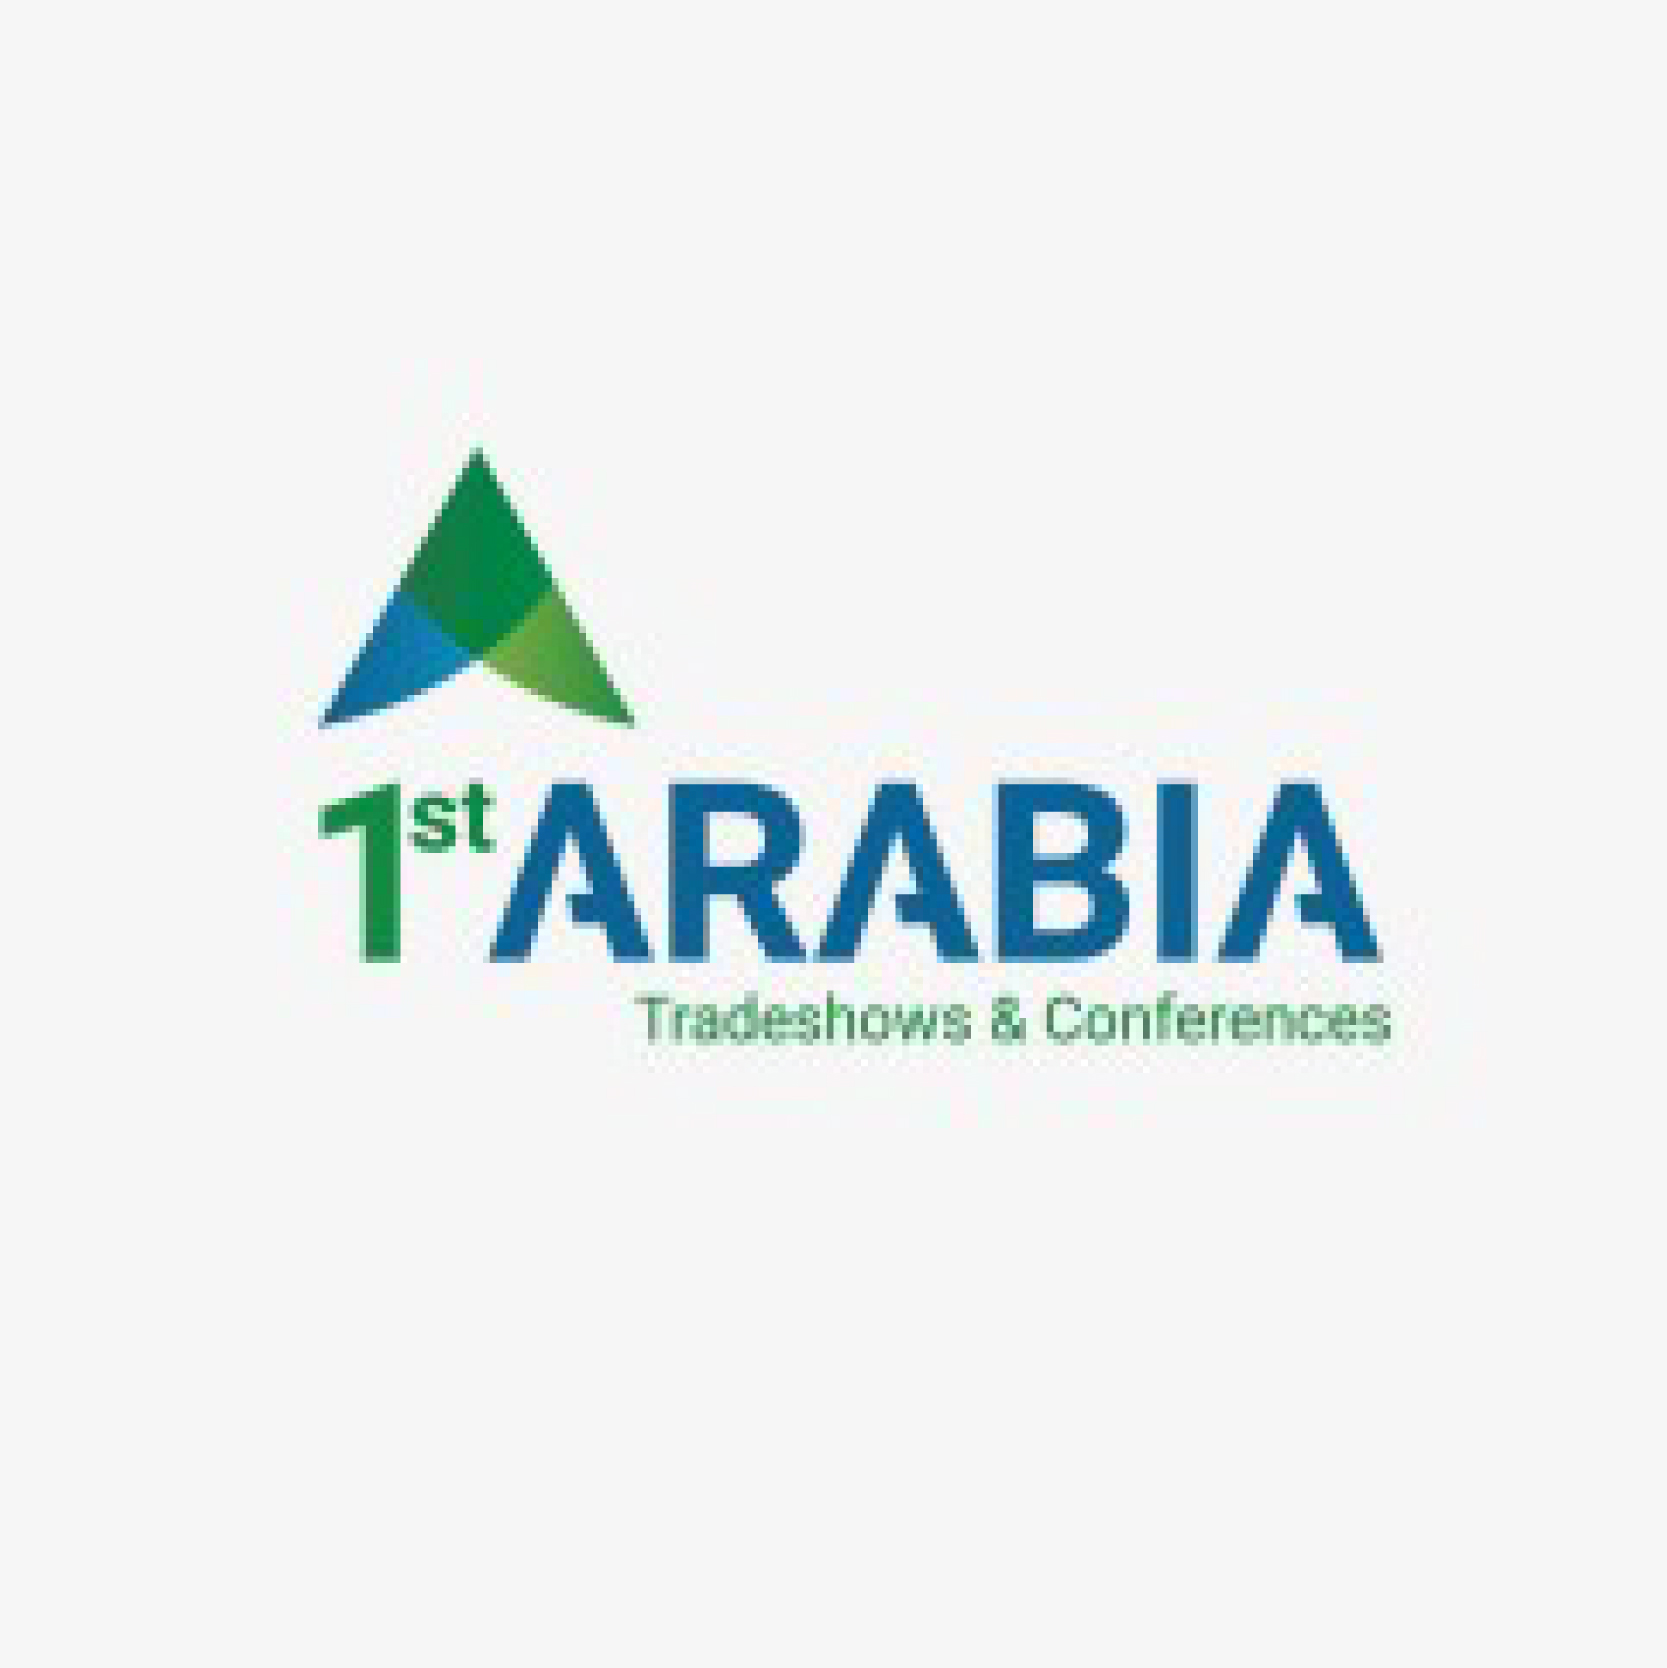 1stArabia Tradeshow & Conference